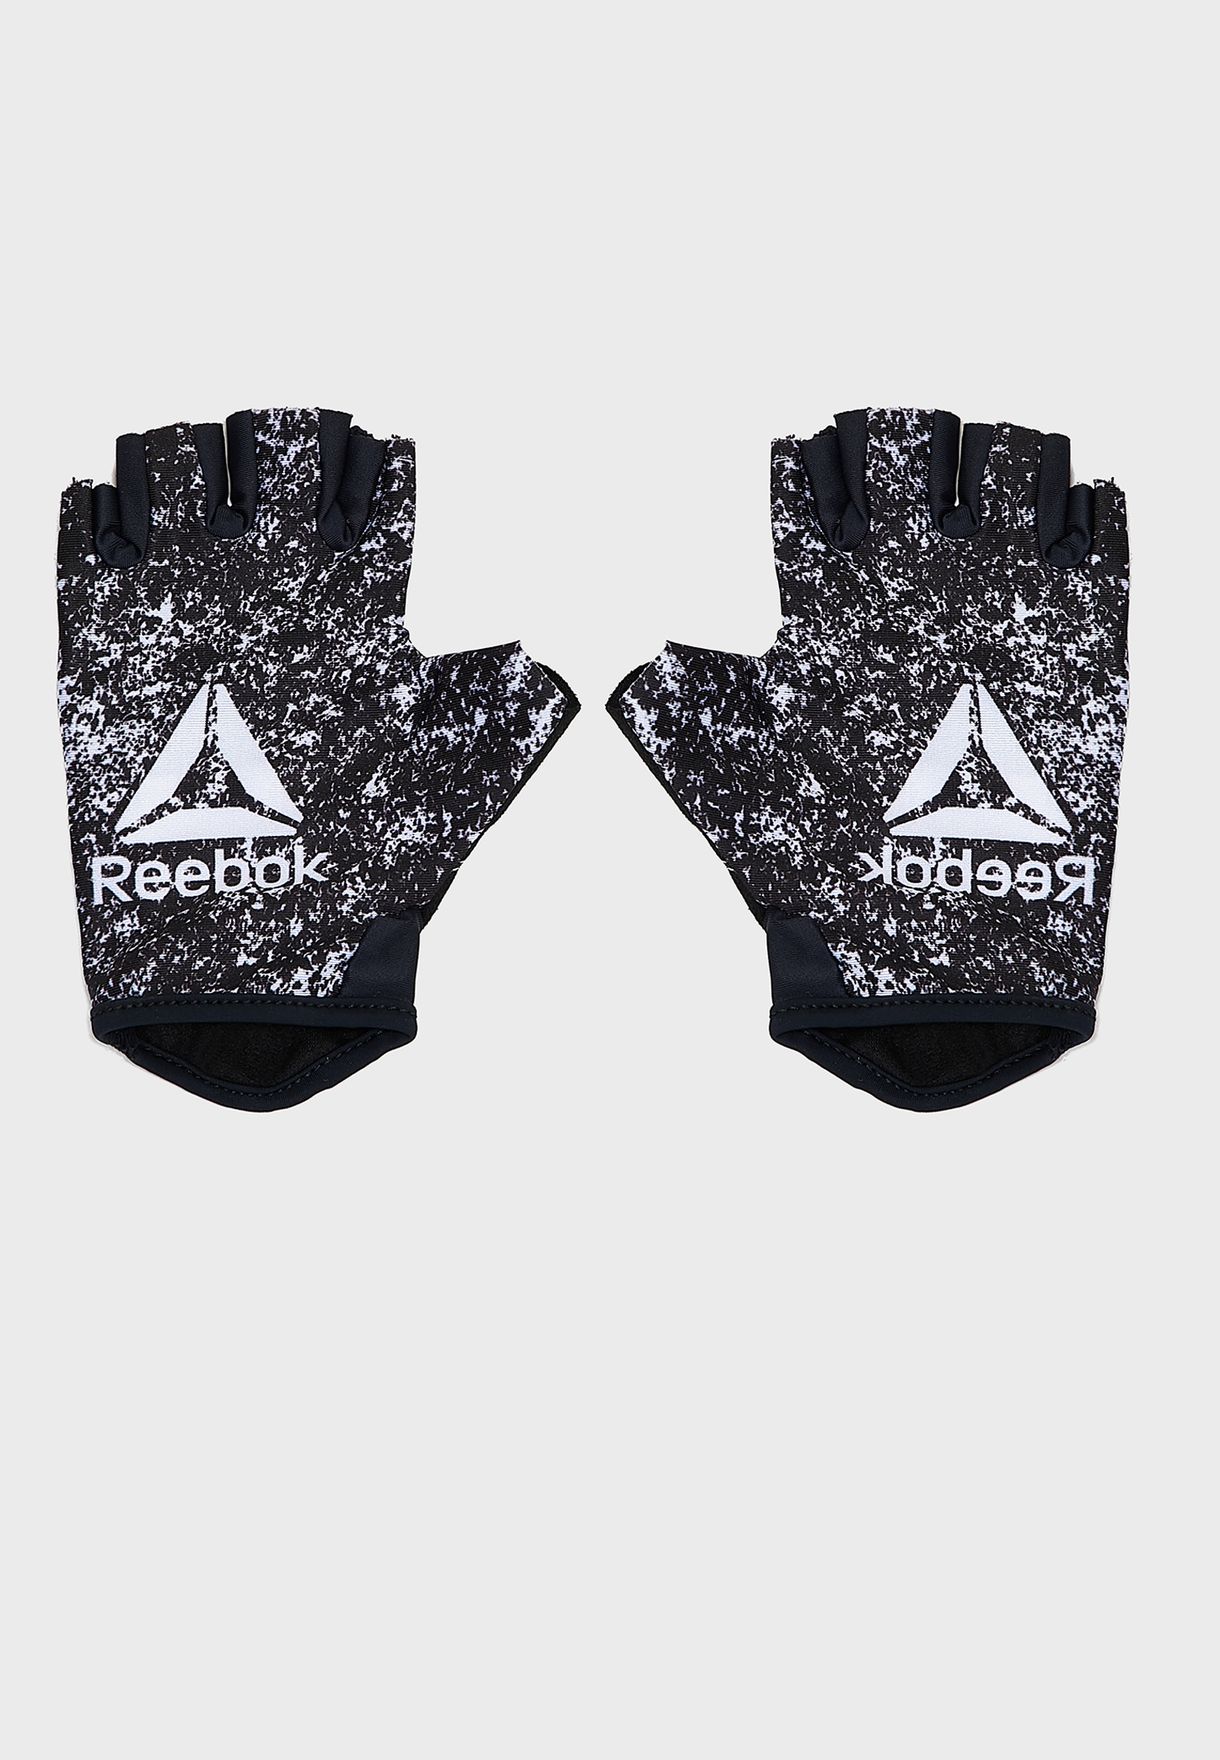 reebok women's fitness gloves